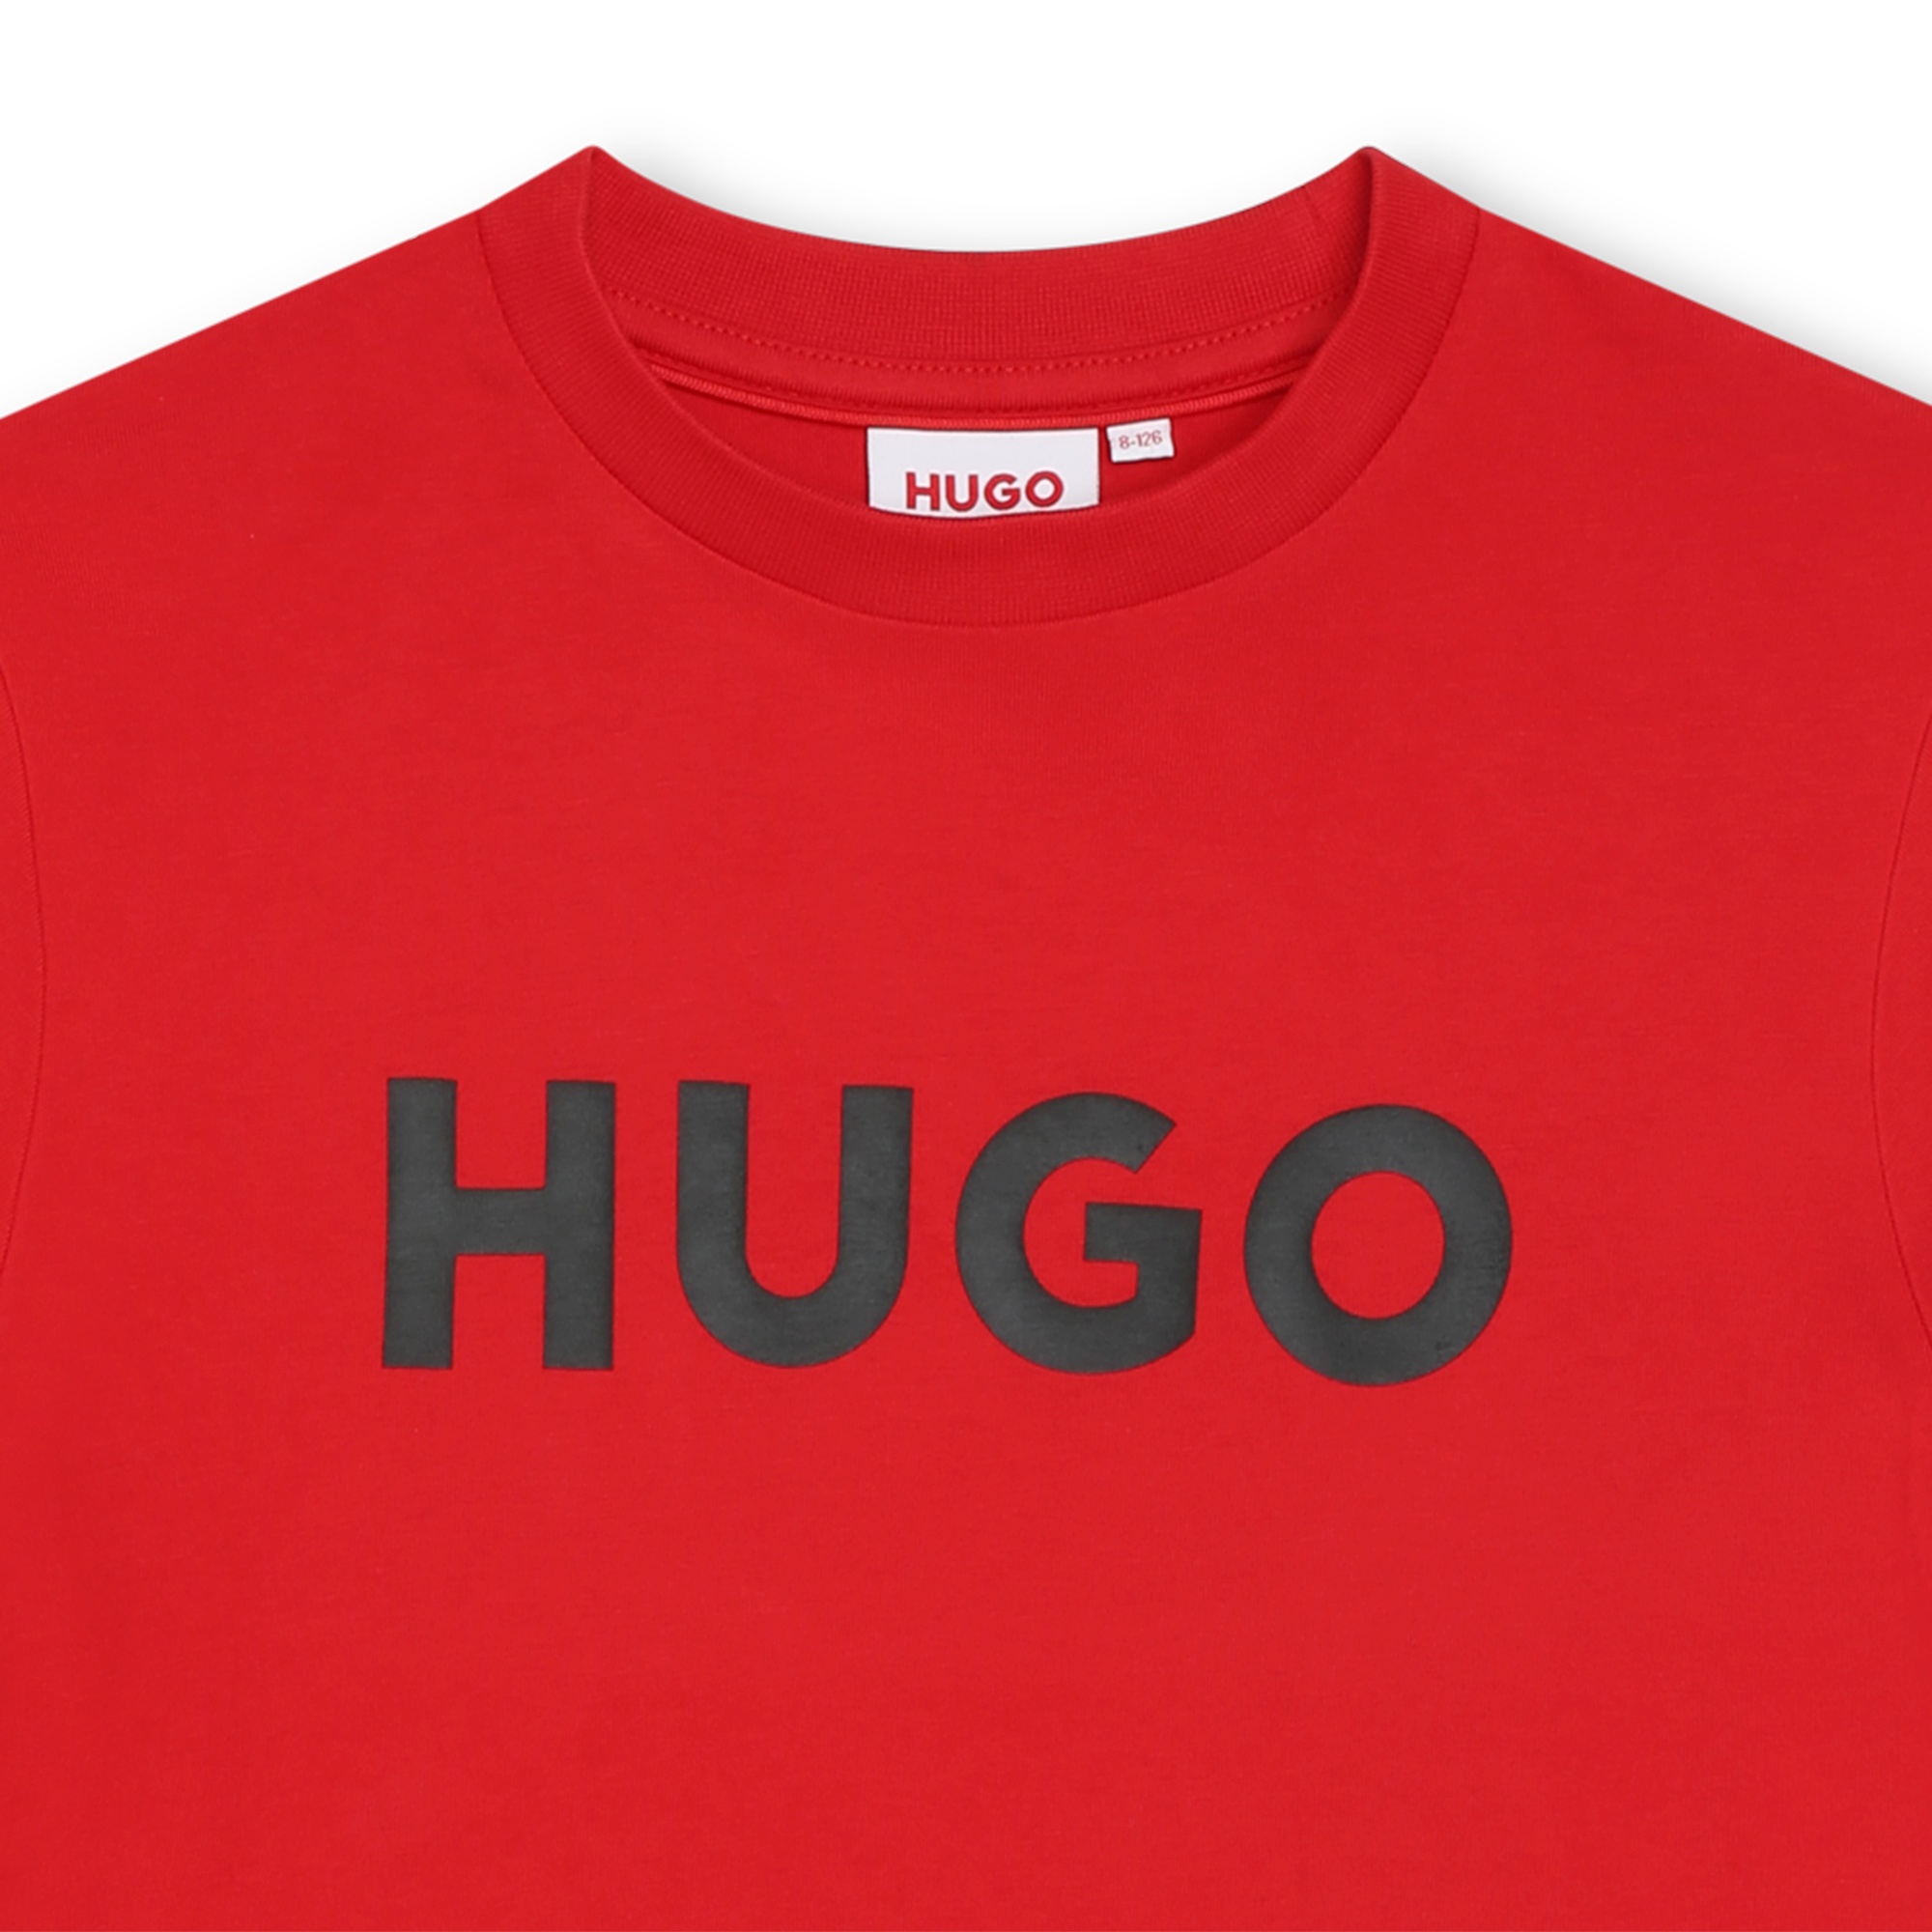 T-shirt bicolore in cotone HUGO Per RAGAZZO